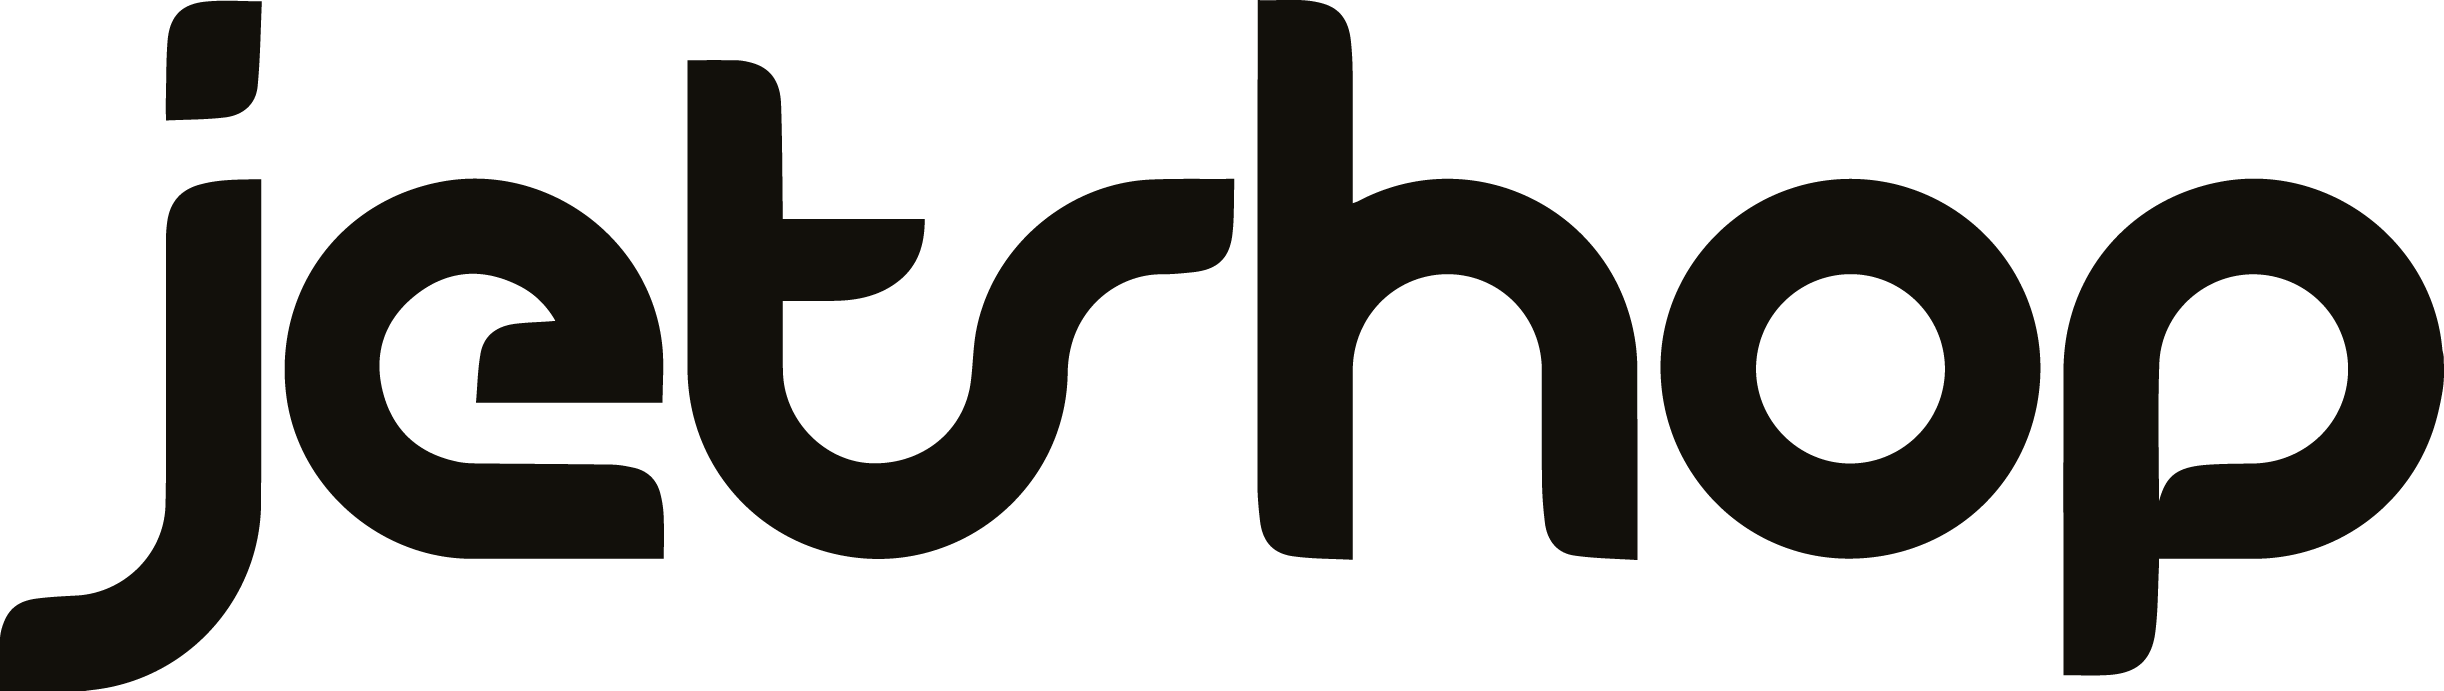 jetshop.logo.black.png